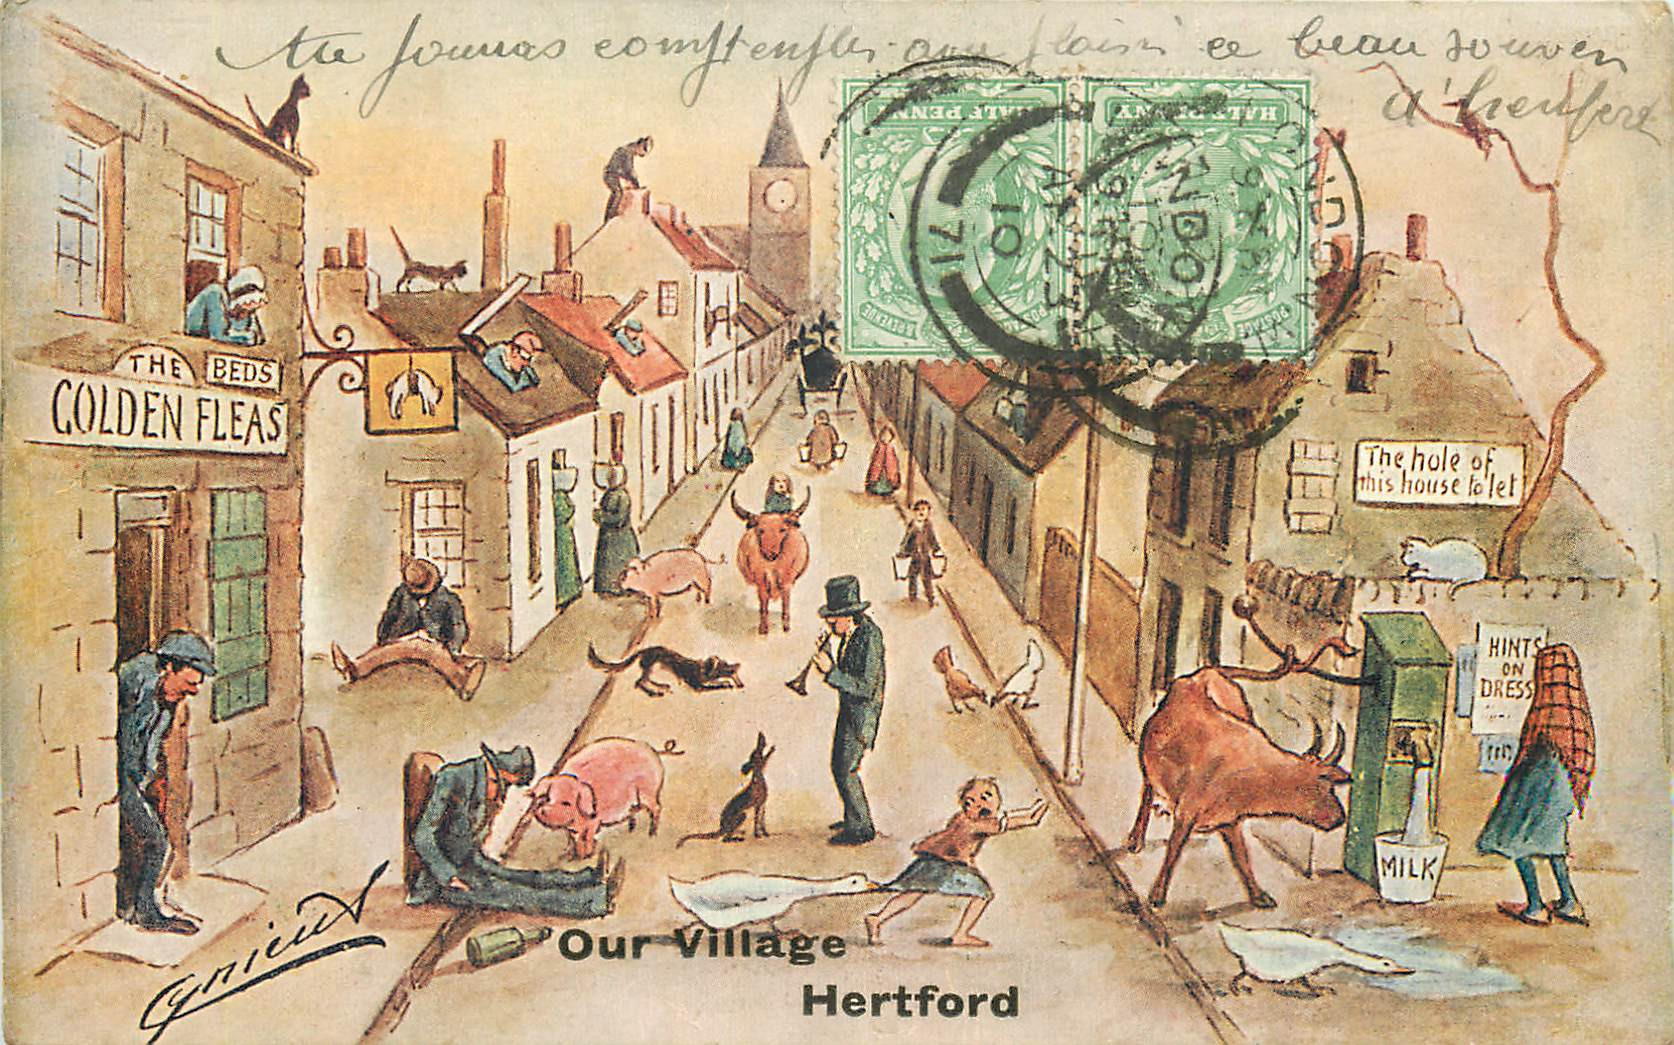 WW HERTFORD. Our Village par Cynieux en 1910